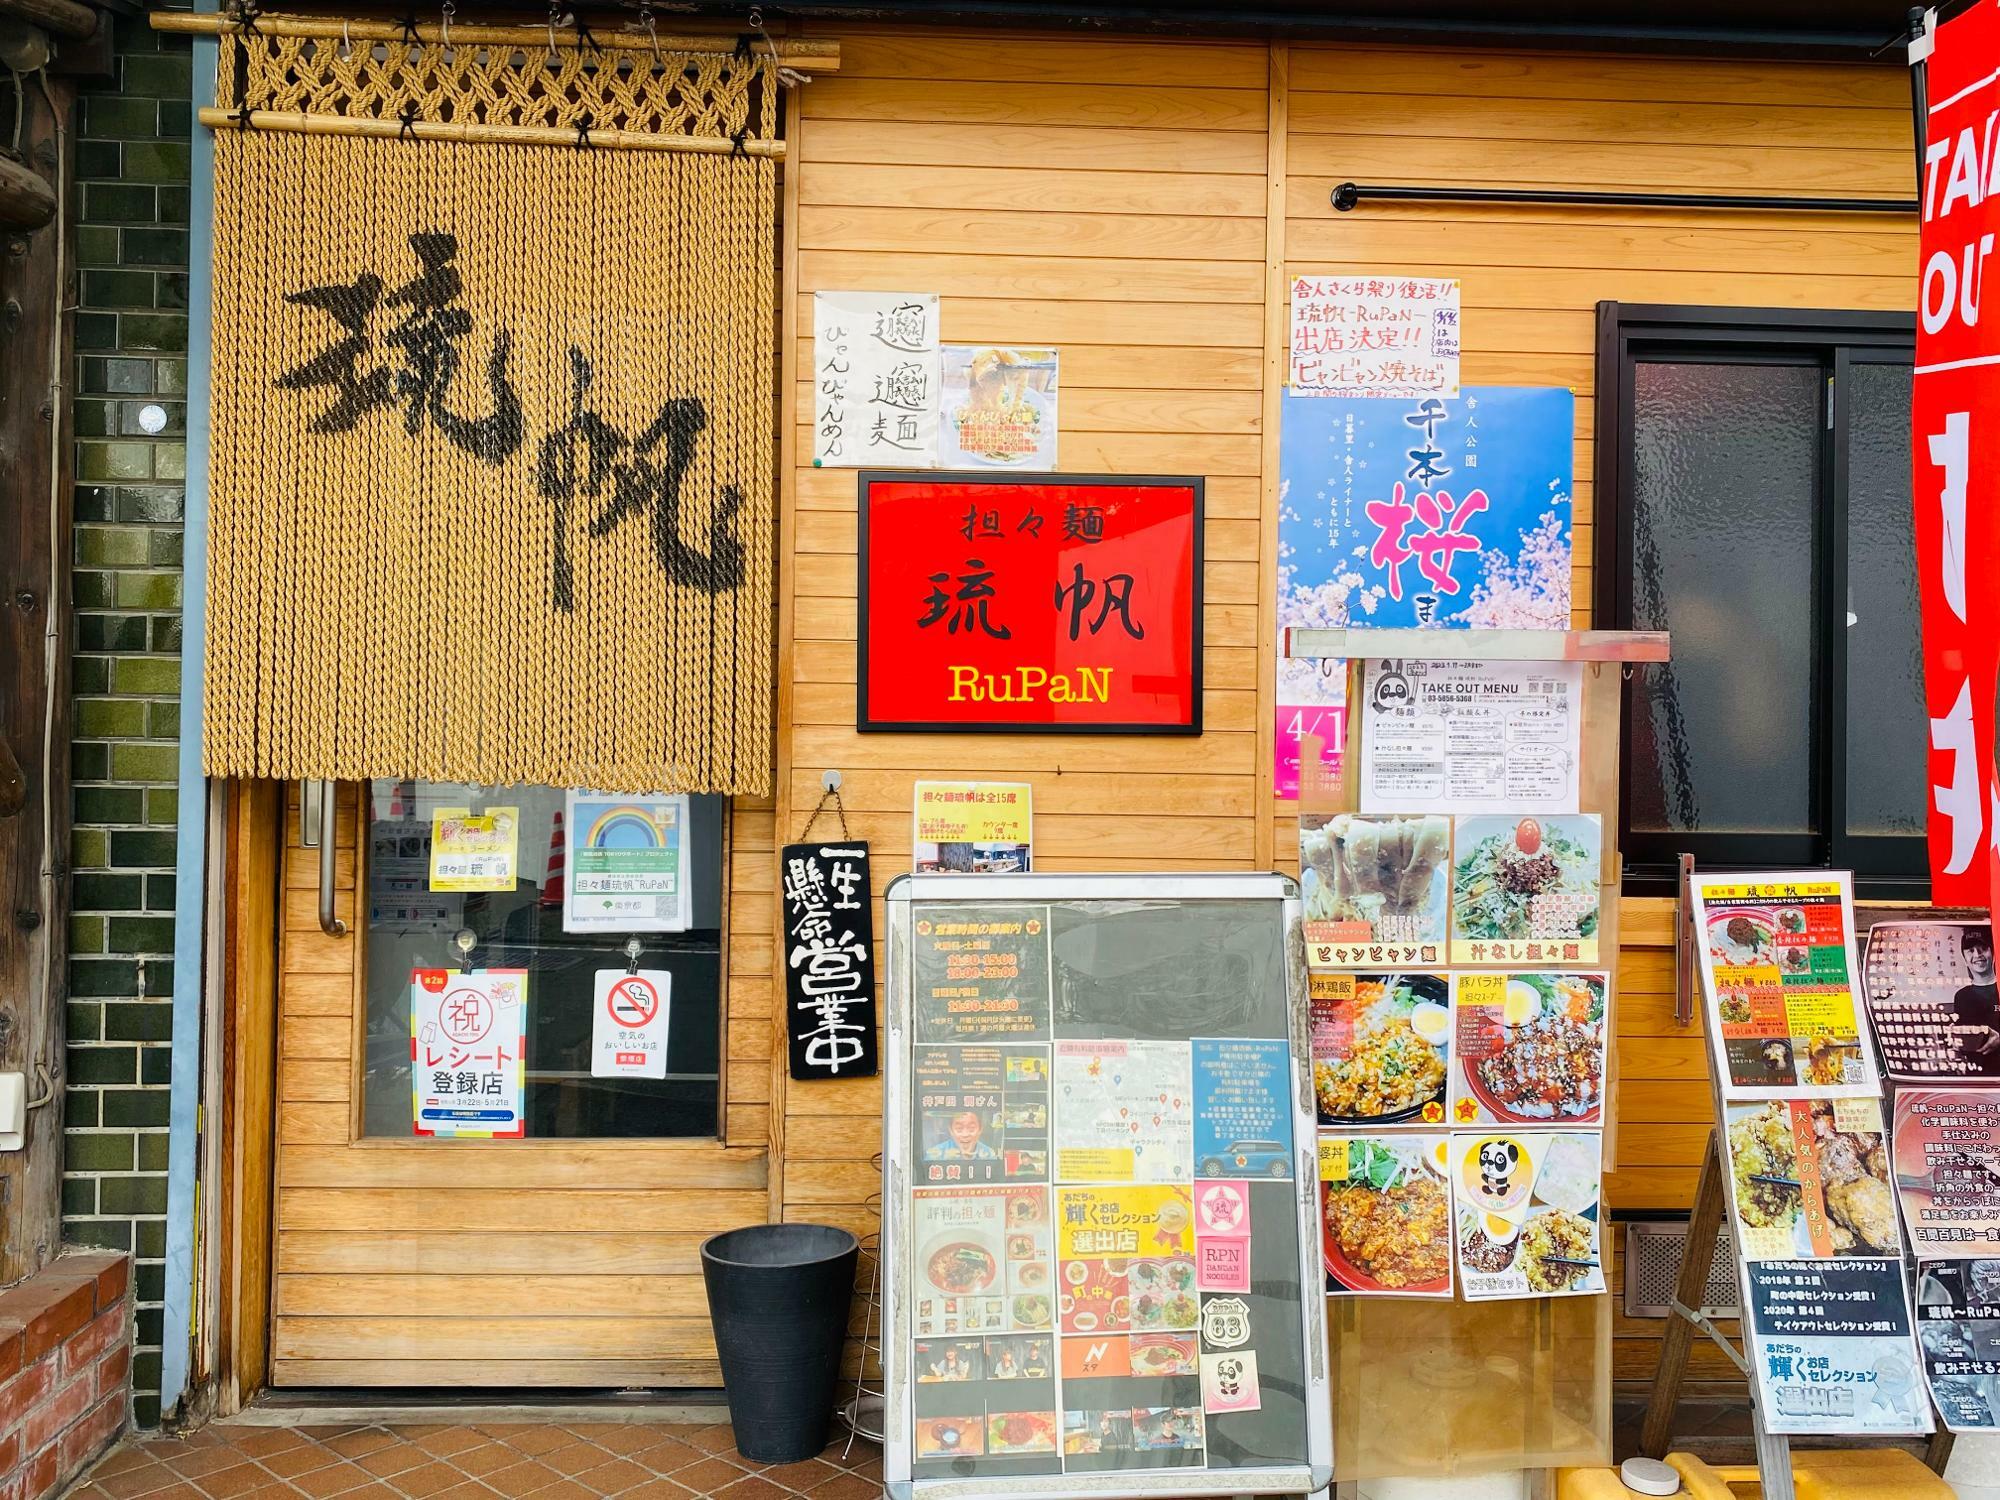 西新井駅から徒歩10分ほどの場所にある「担々麺 琉帆〜RuPaN〜」